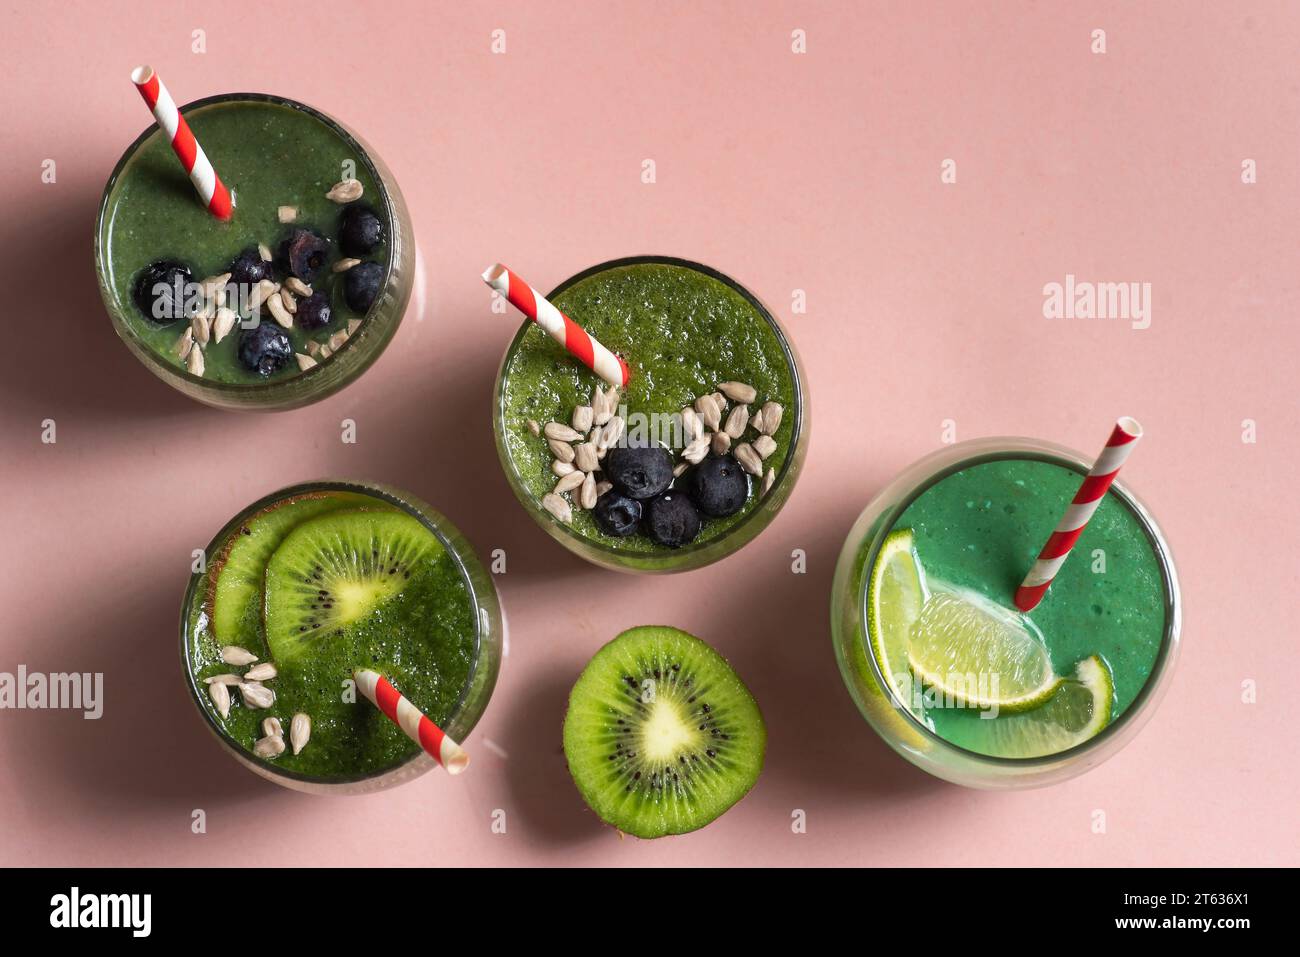 Frullato vegano verde con kiwi e lime in tazze di vetro con cannucce. Guarnita con mirtilli freschi e semi di girasole. Vista dall'alto dello sfondo rosa chiaro Foto Stock